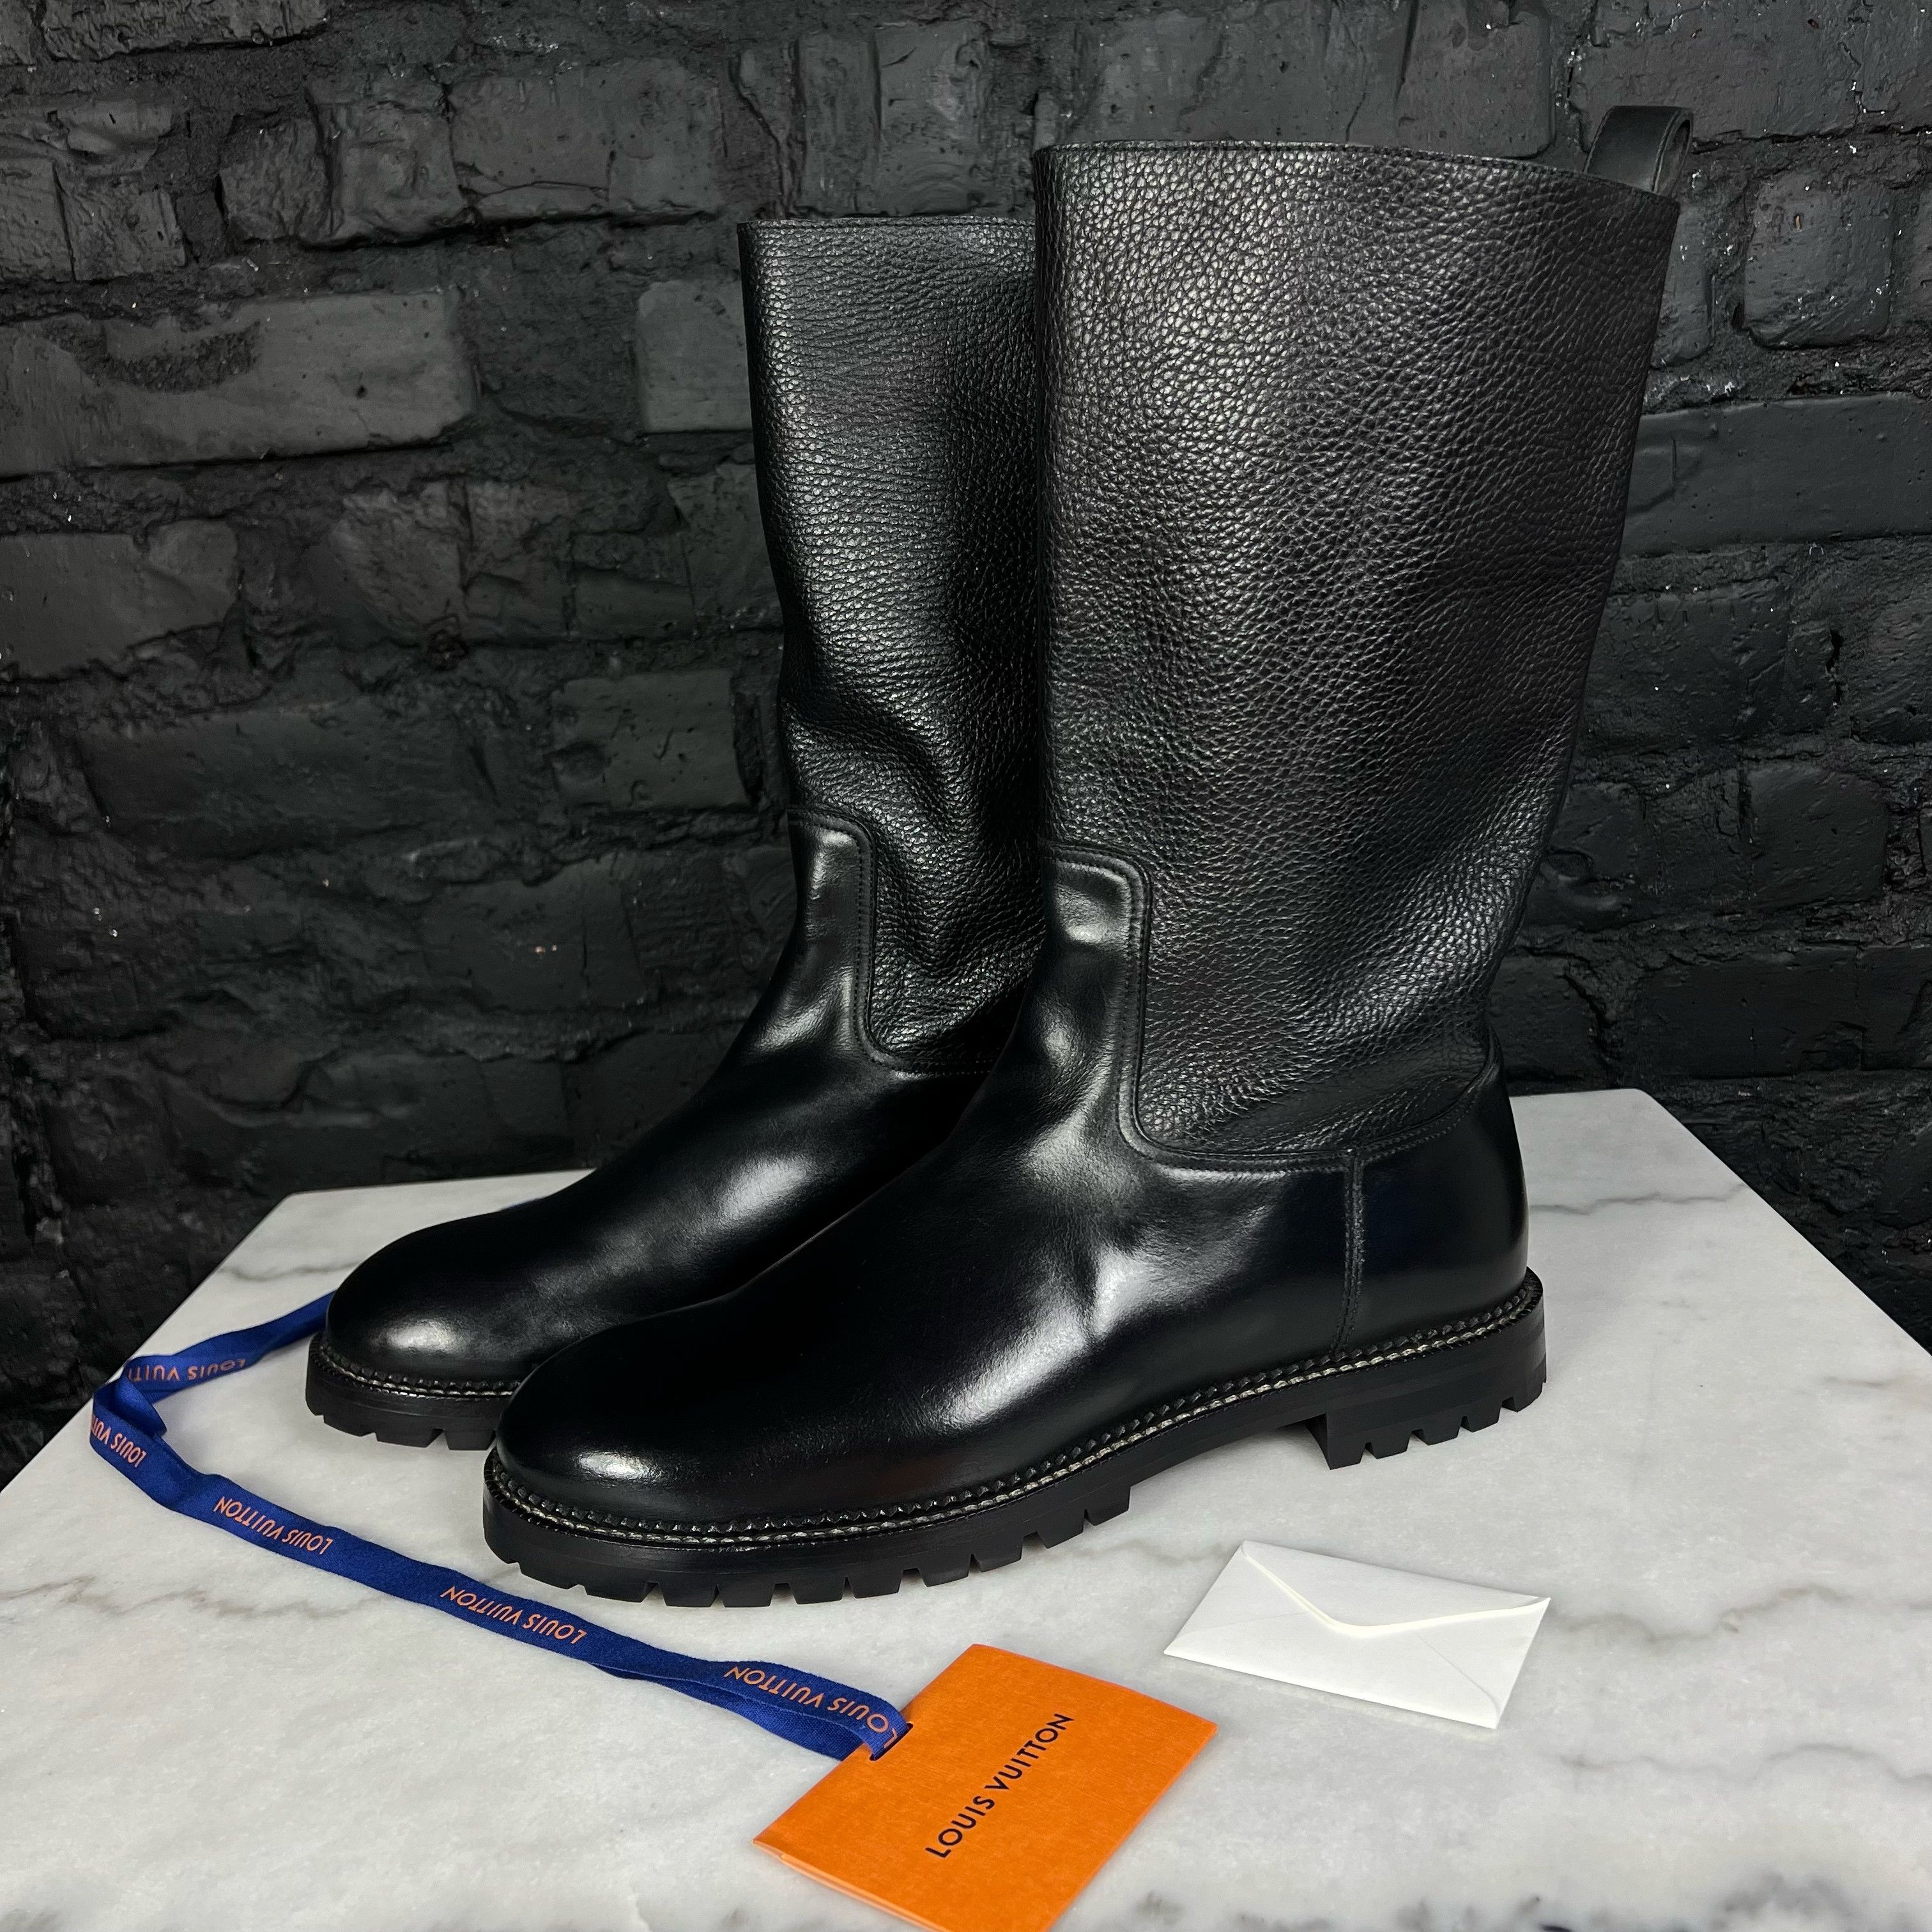 Louis Vuitton Leather Boots Men Shoes Size UK8. Usa9, Eur43, S290